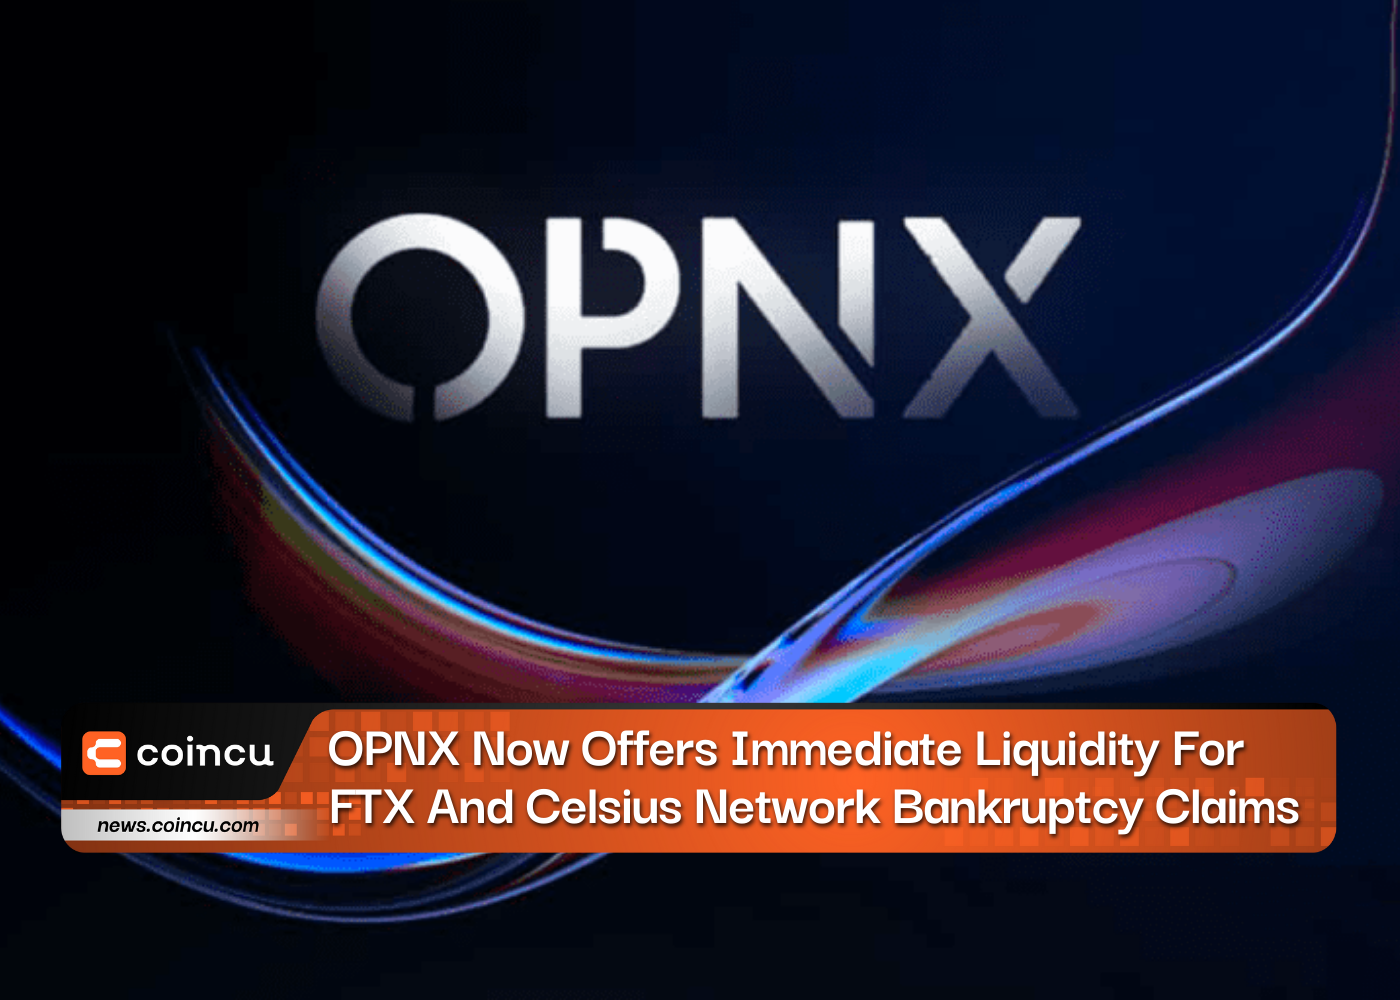 OPNX hiện cung cấp thanh khoản ngay lập tức cho các yêu cầu phá sản mạng FTX và Celsius